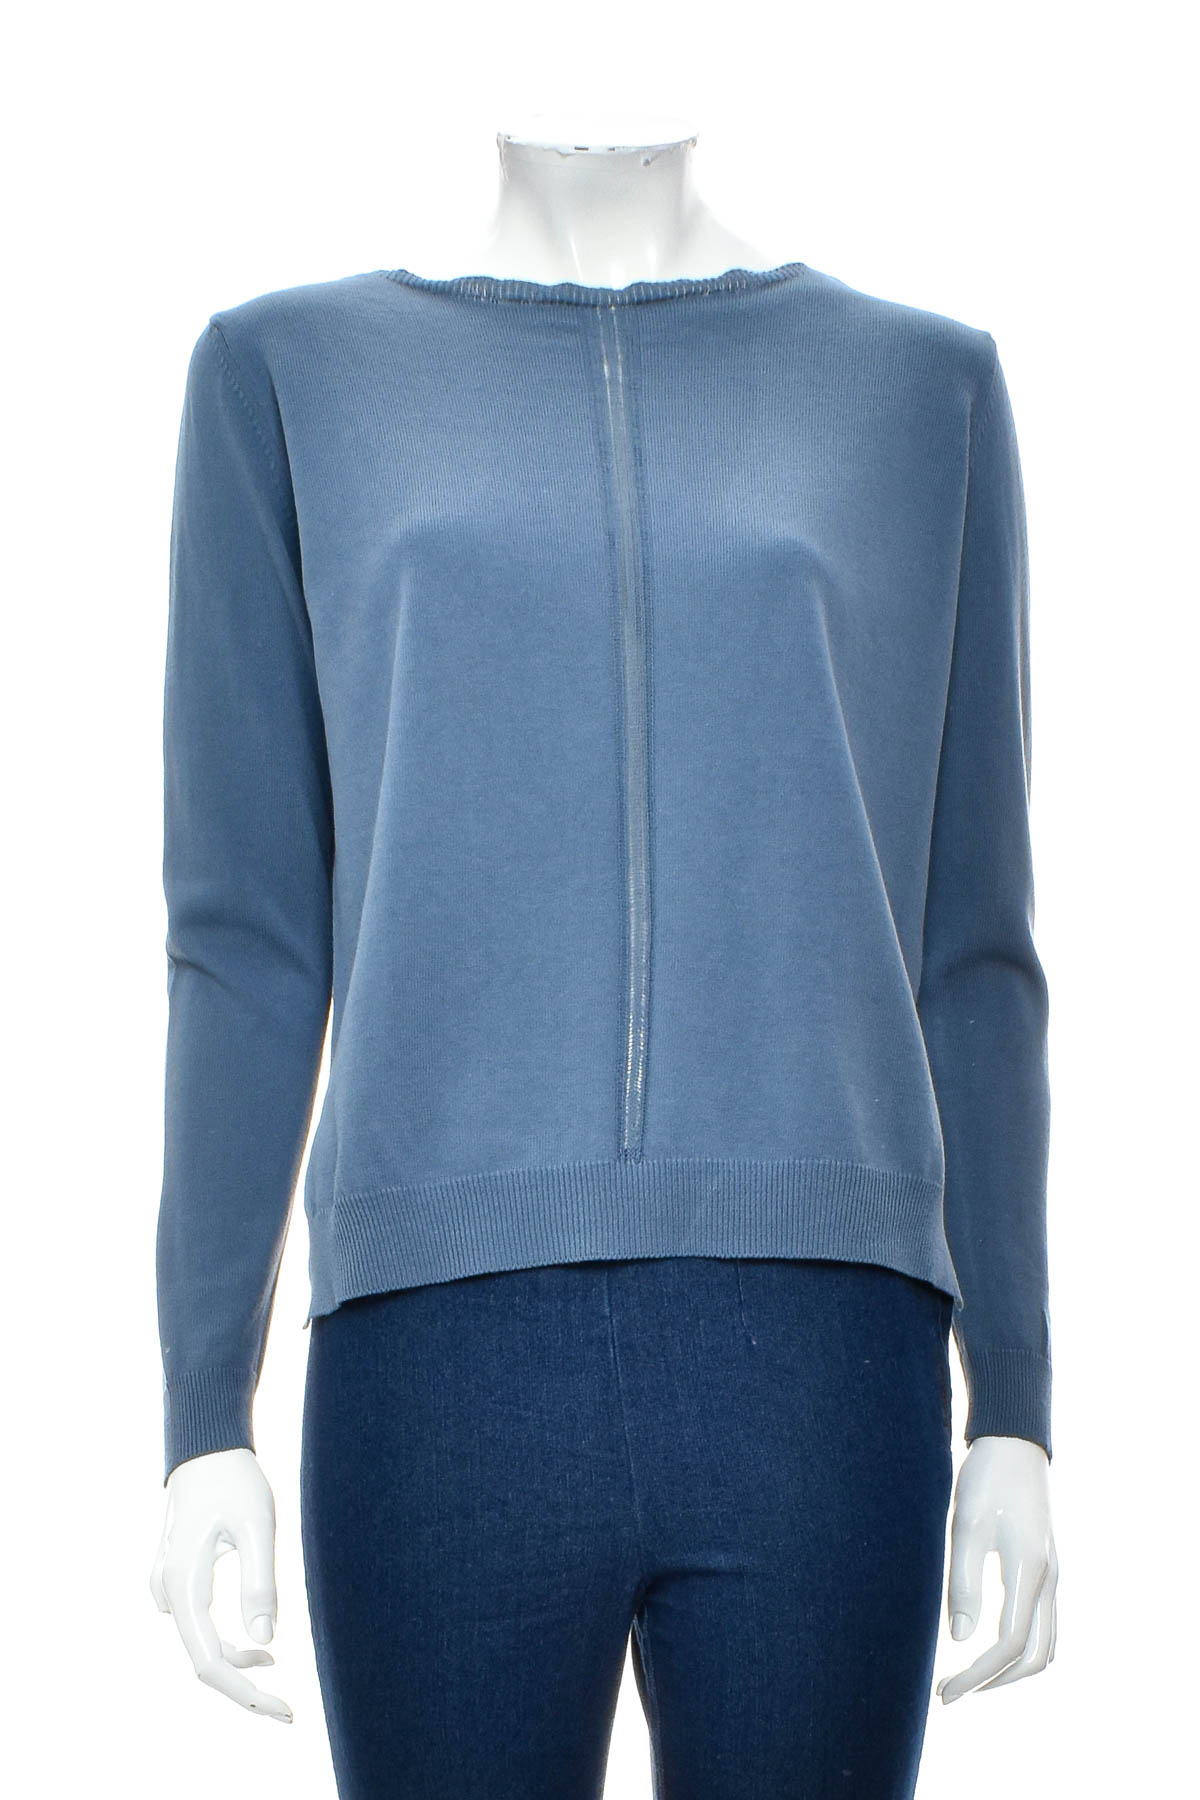 Women's sweater - Blaumax - 0